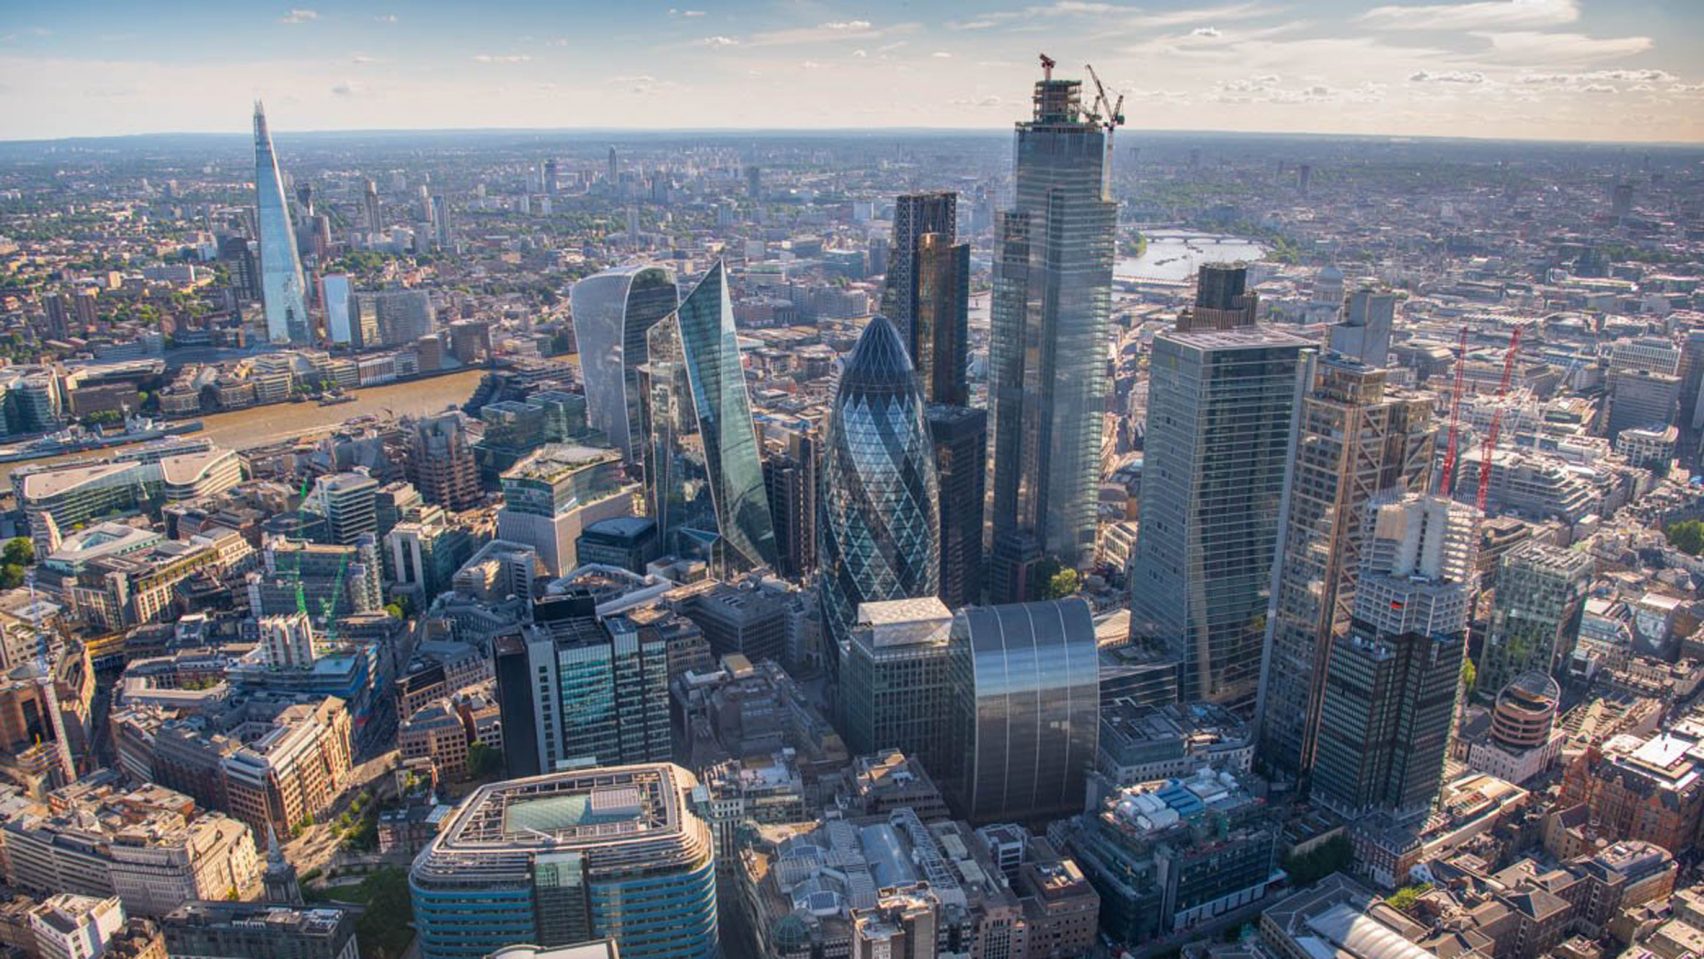 Il vento, i grattacieli e i ciclisti: Londra adotta un piano per ridurre le “gallerie del vento”